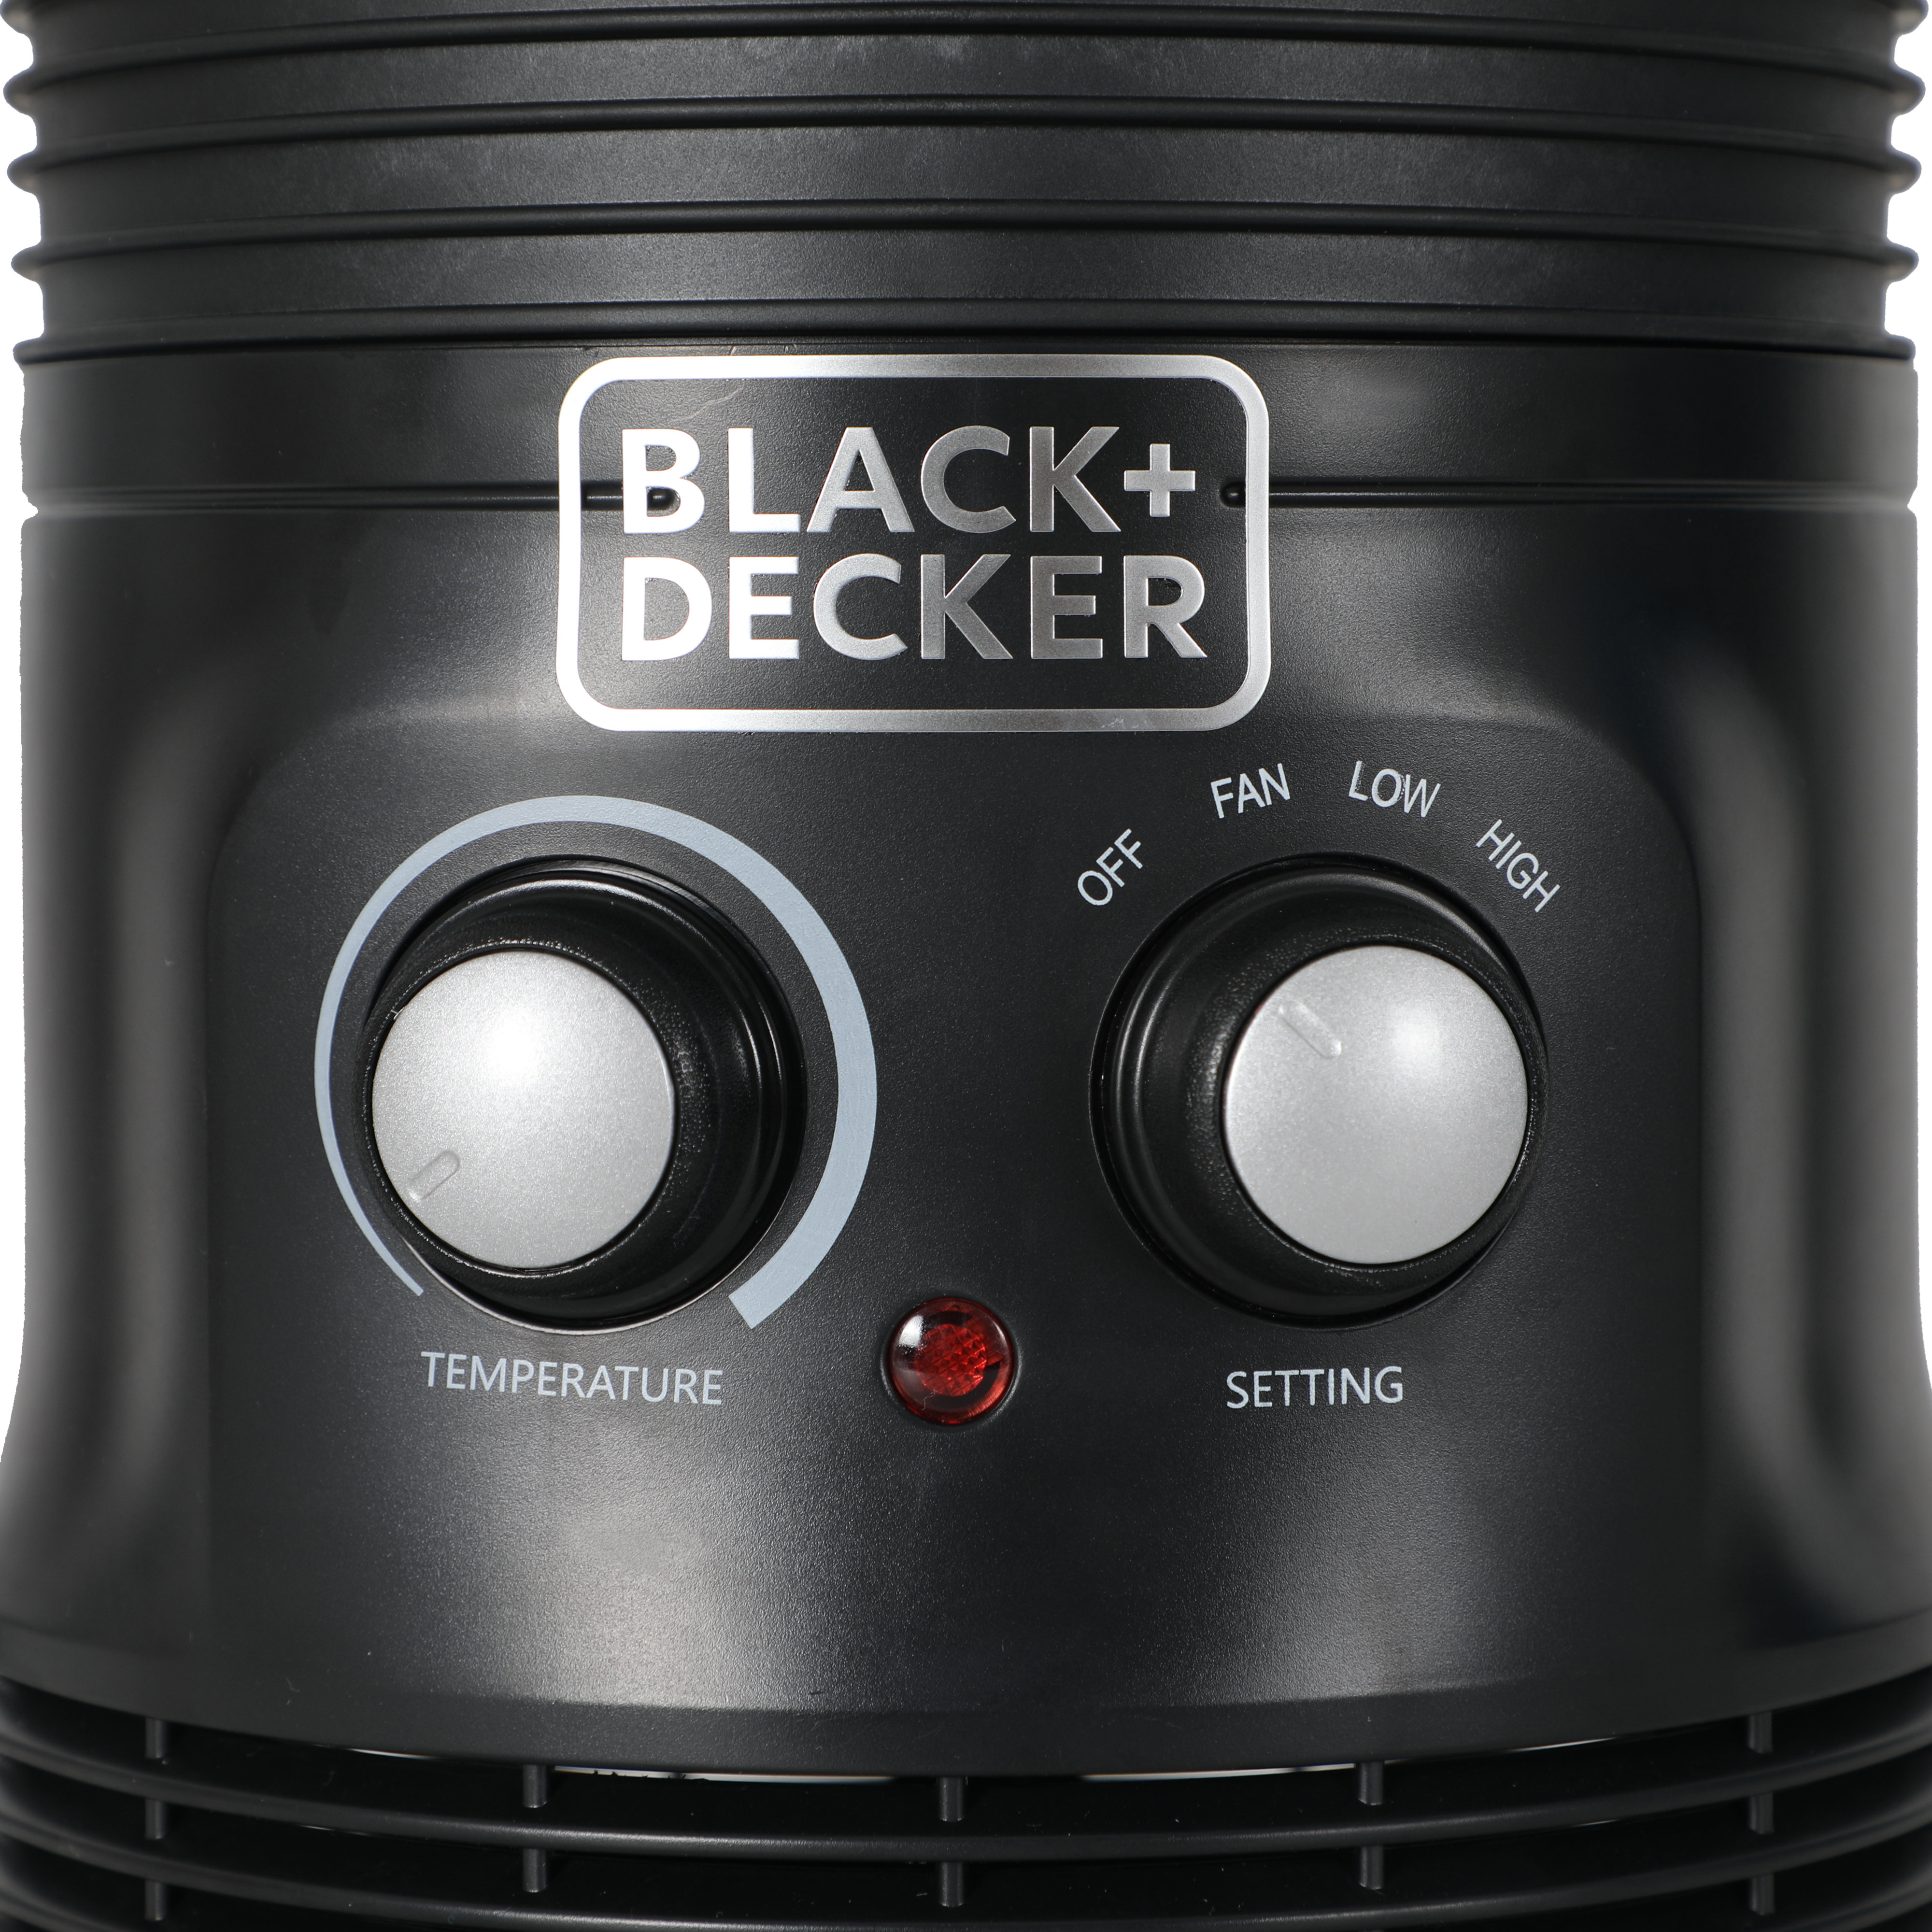 Black + Decker BLACK+DECKER 1500 Watt 5100 BTU Electric Compact